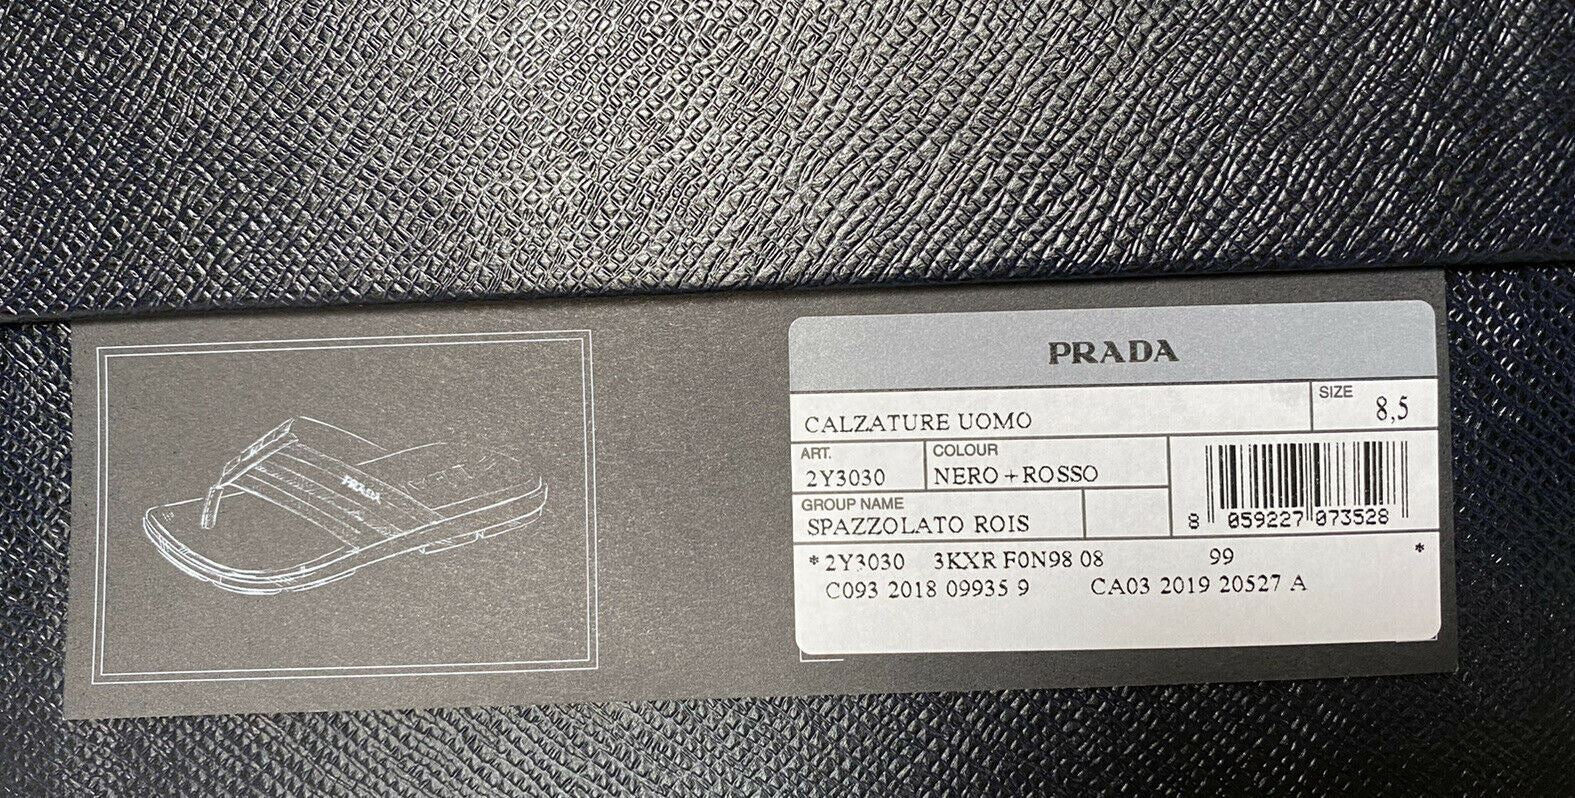 NIB $520 Мужские шлепанцы Prada Milano Туфли черные 9,5 США 2Y3030 Италия